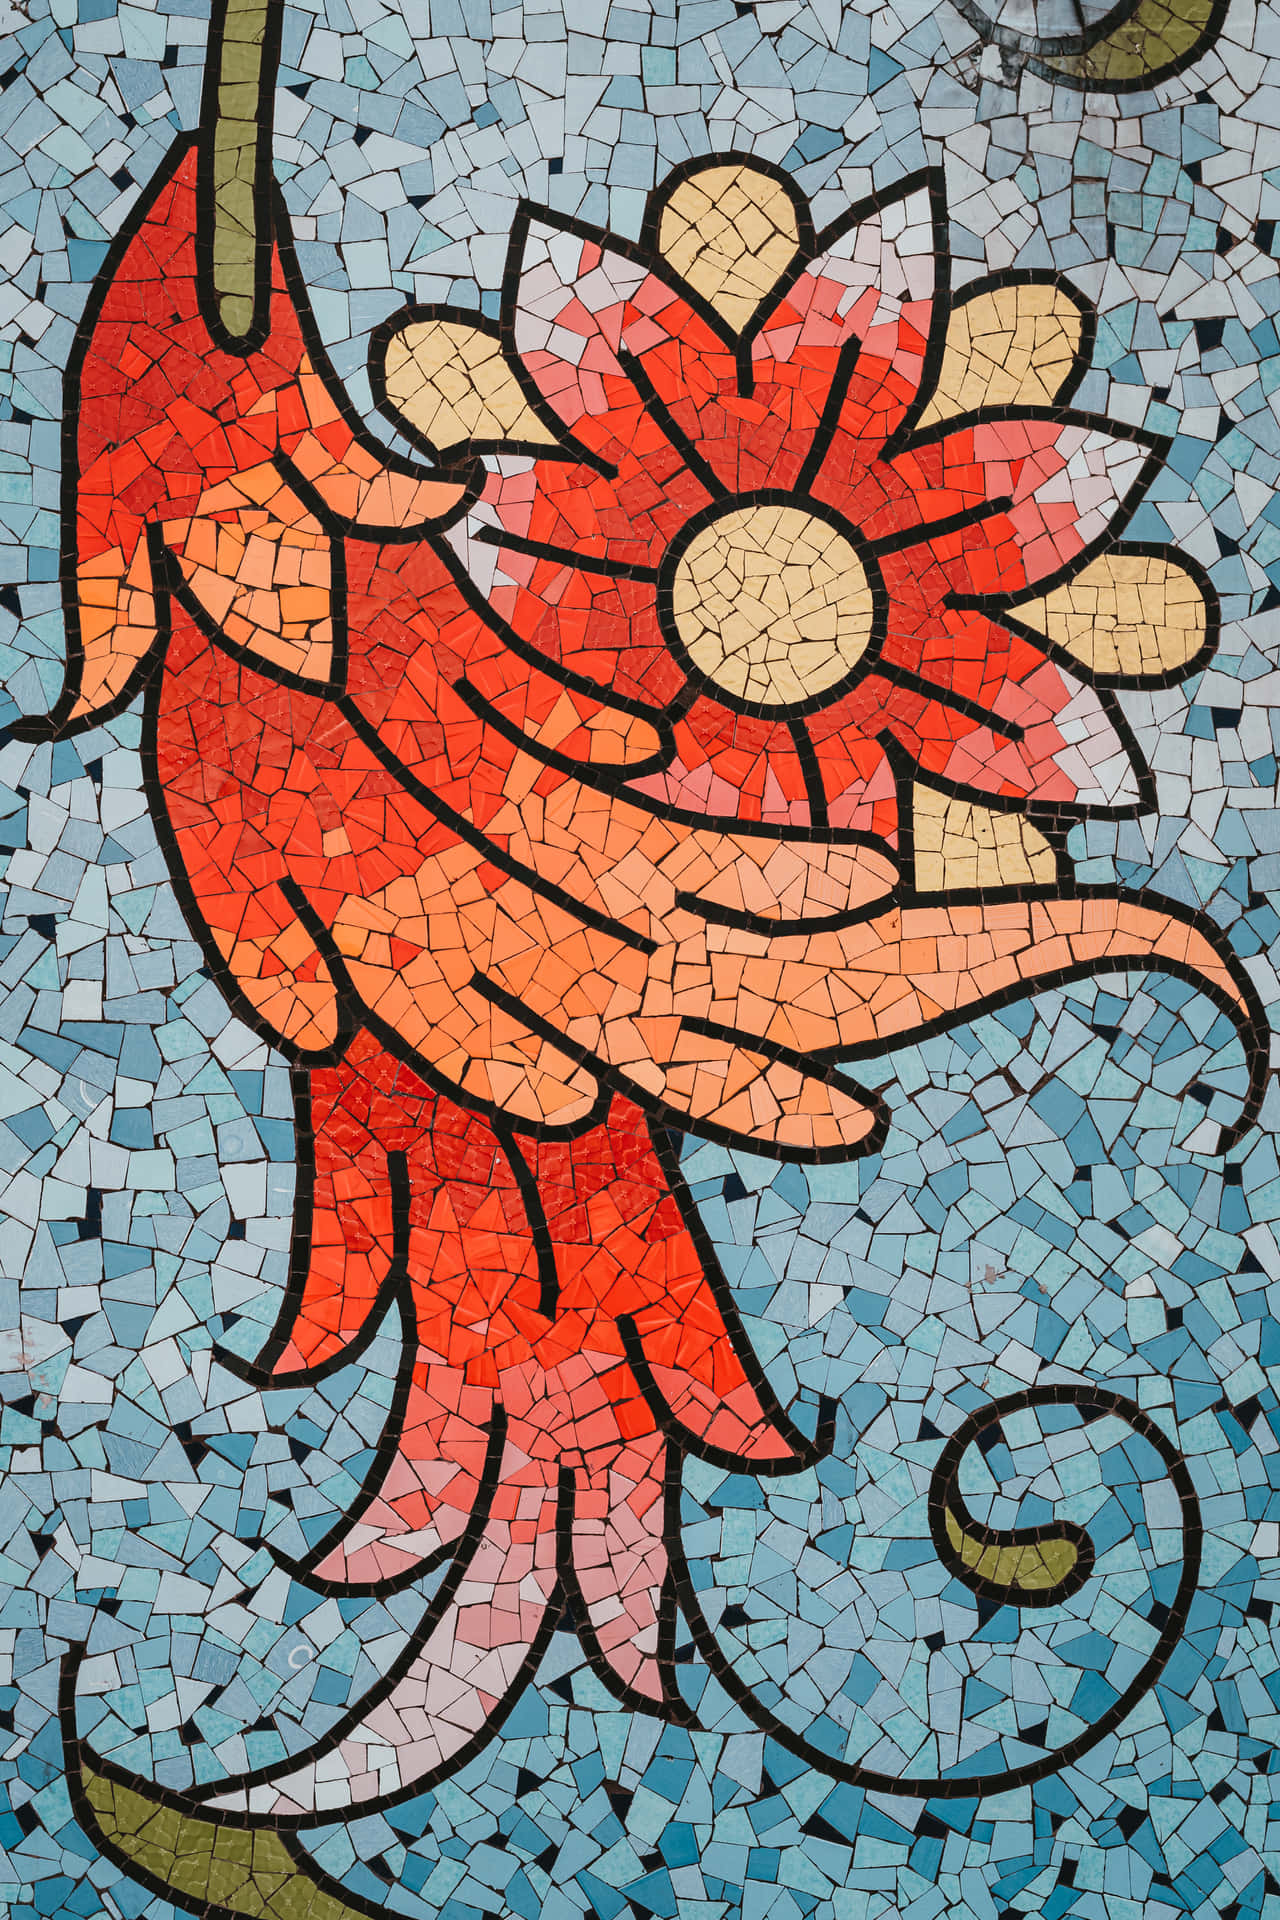 Arteem Azulejo Mosaico - Arte Em Mosaico De Beija-flor